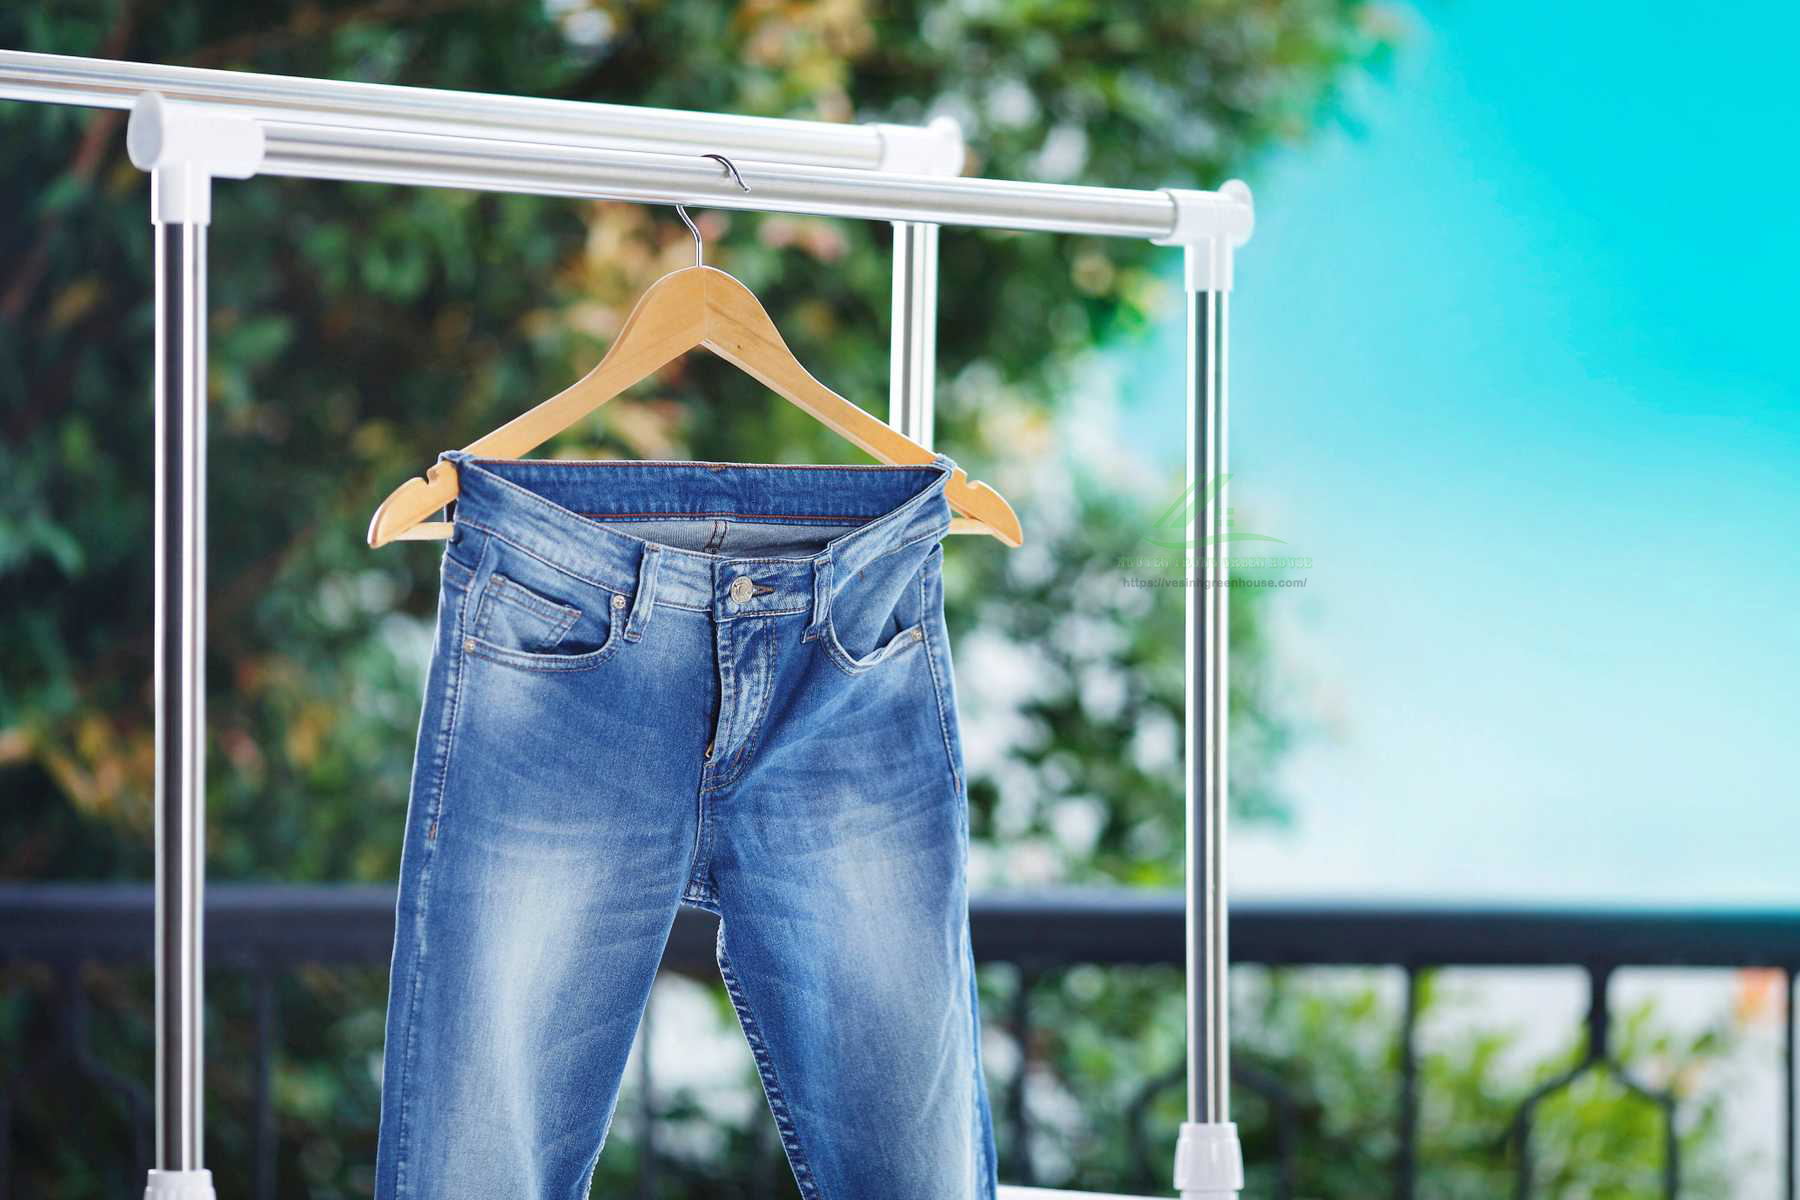 Quần jean phơi nắng nhiều dễ bị phai màu nên cần giữ màu để quần luôn đẹp